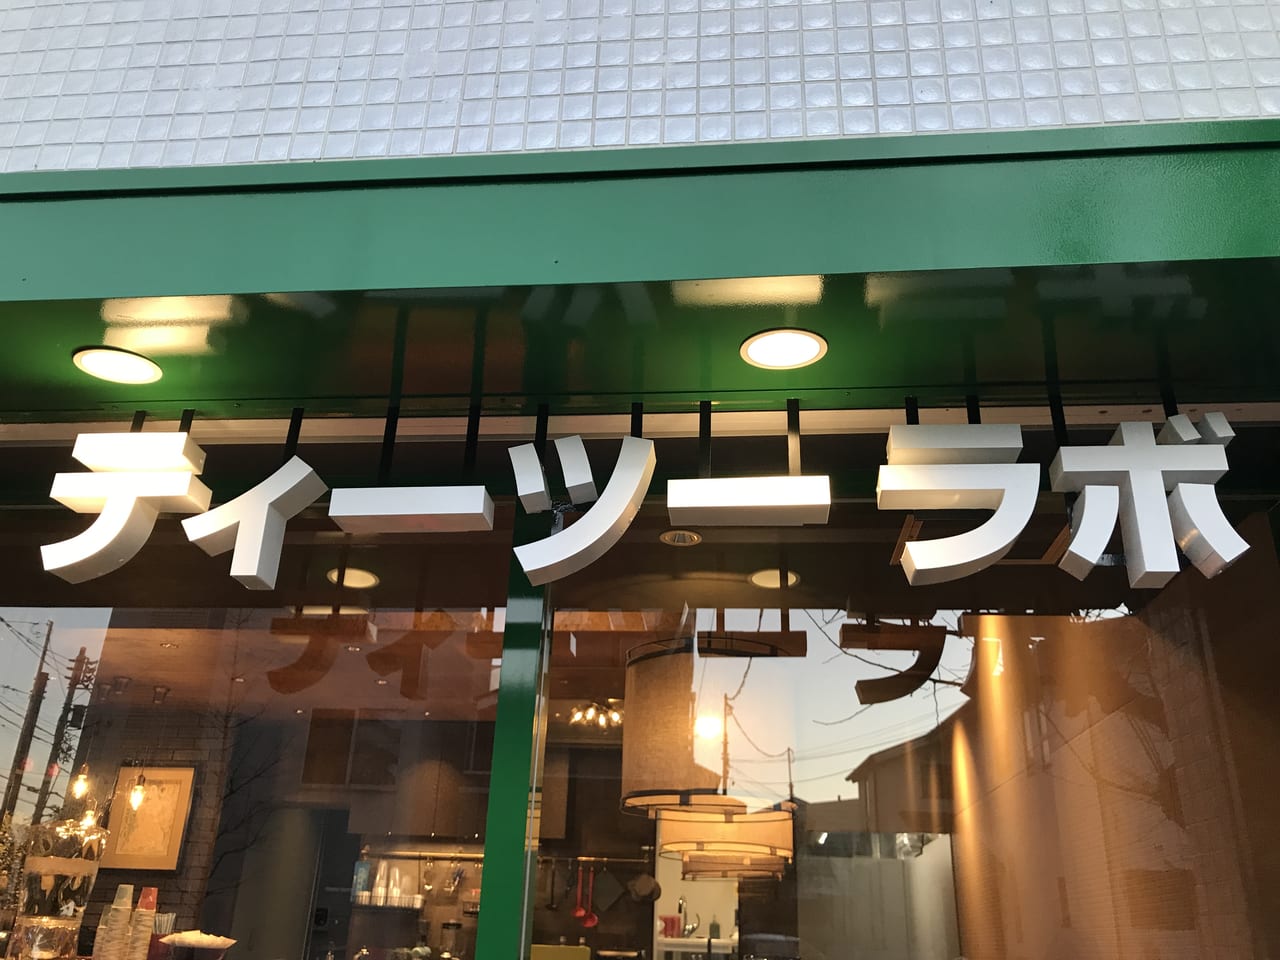 世田谷区等々力7丁目に岡山県小田郡矢掛町のお団子カフェがプレオープンしました。